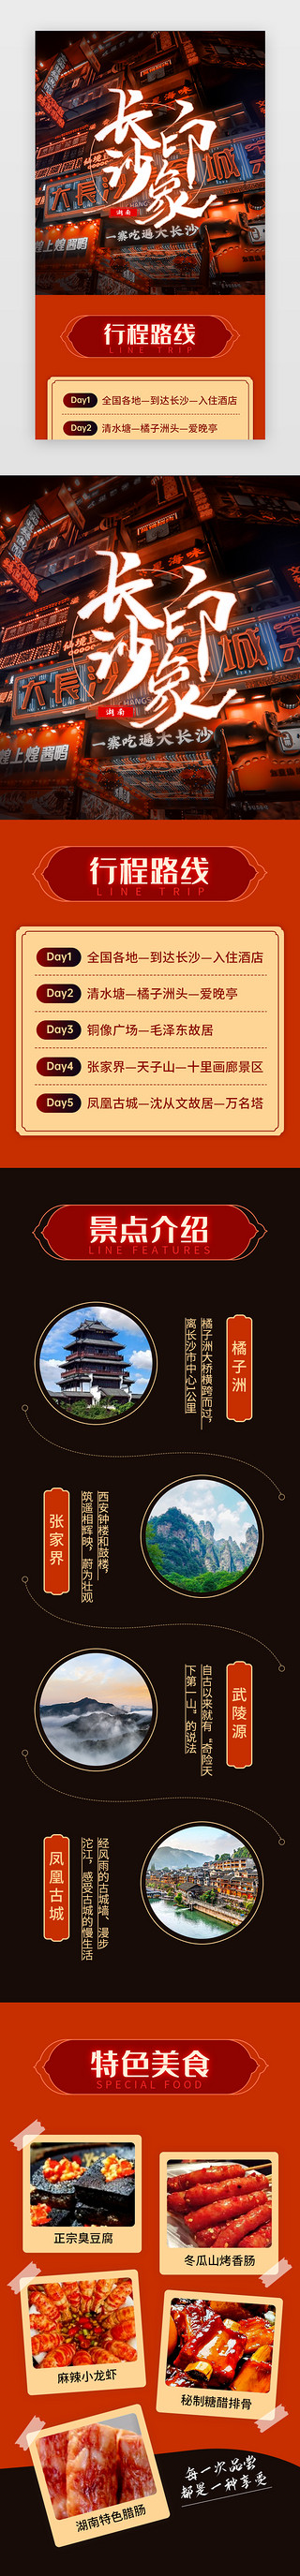 中国风海报UI设计素材_长沙印象H5中国风橙色长沙